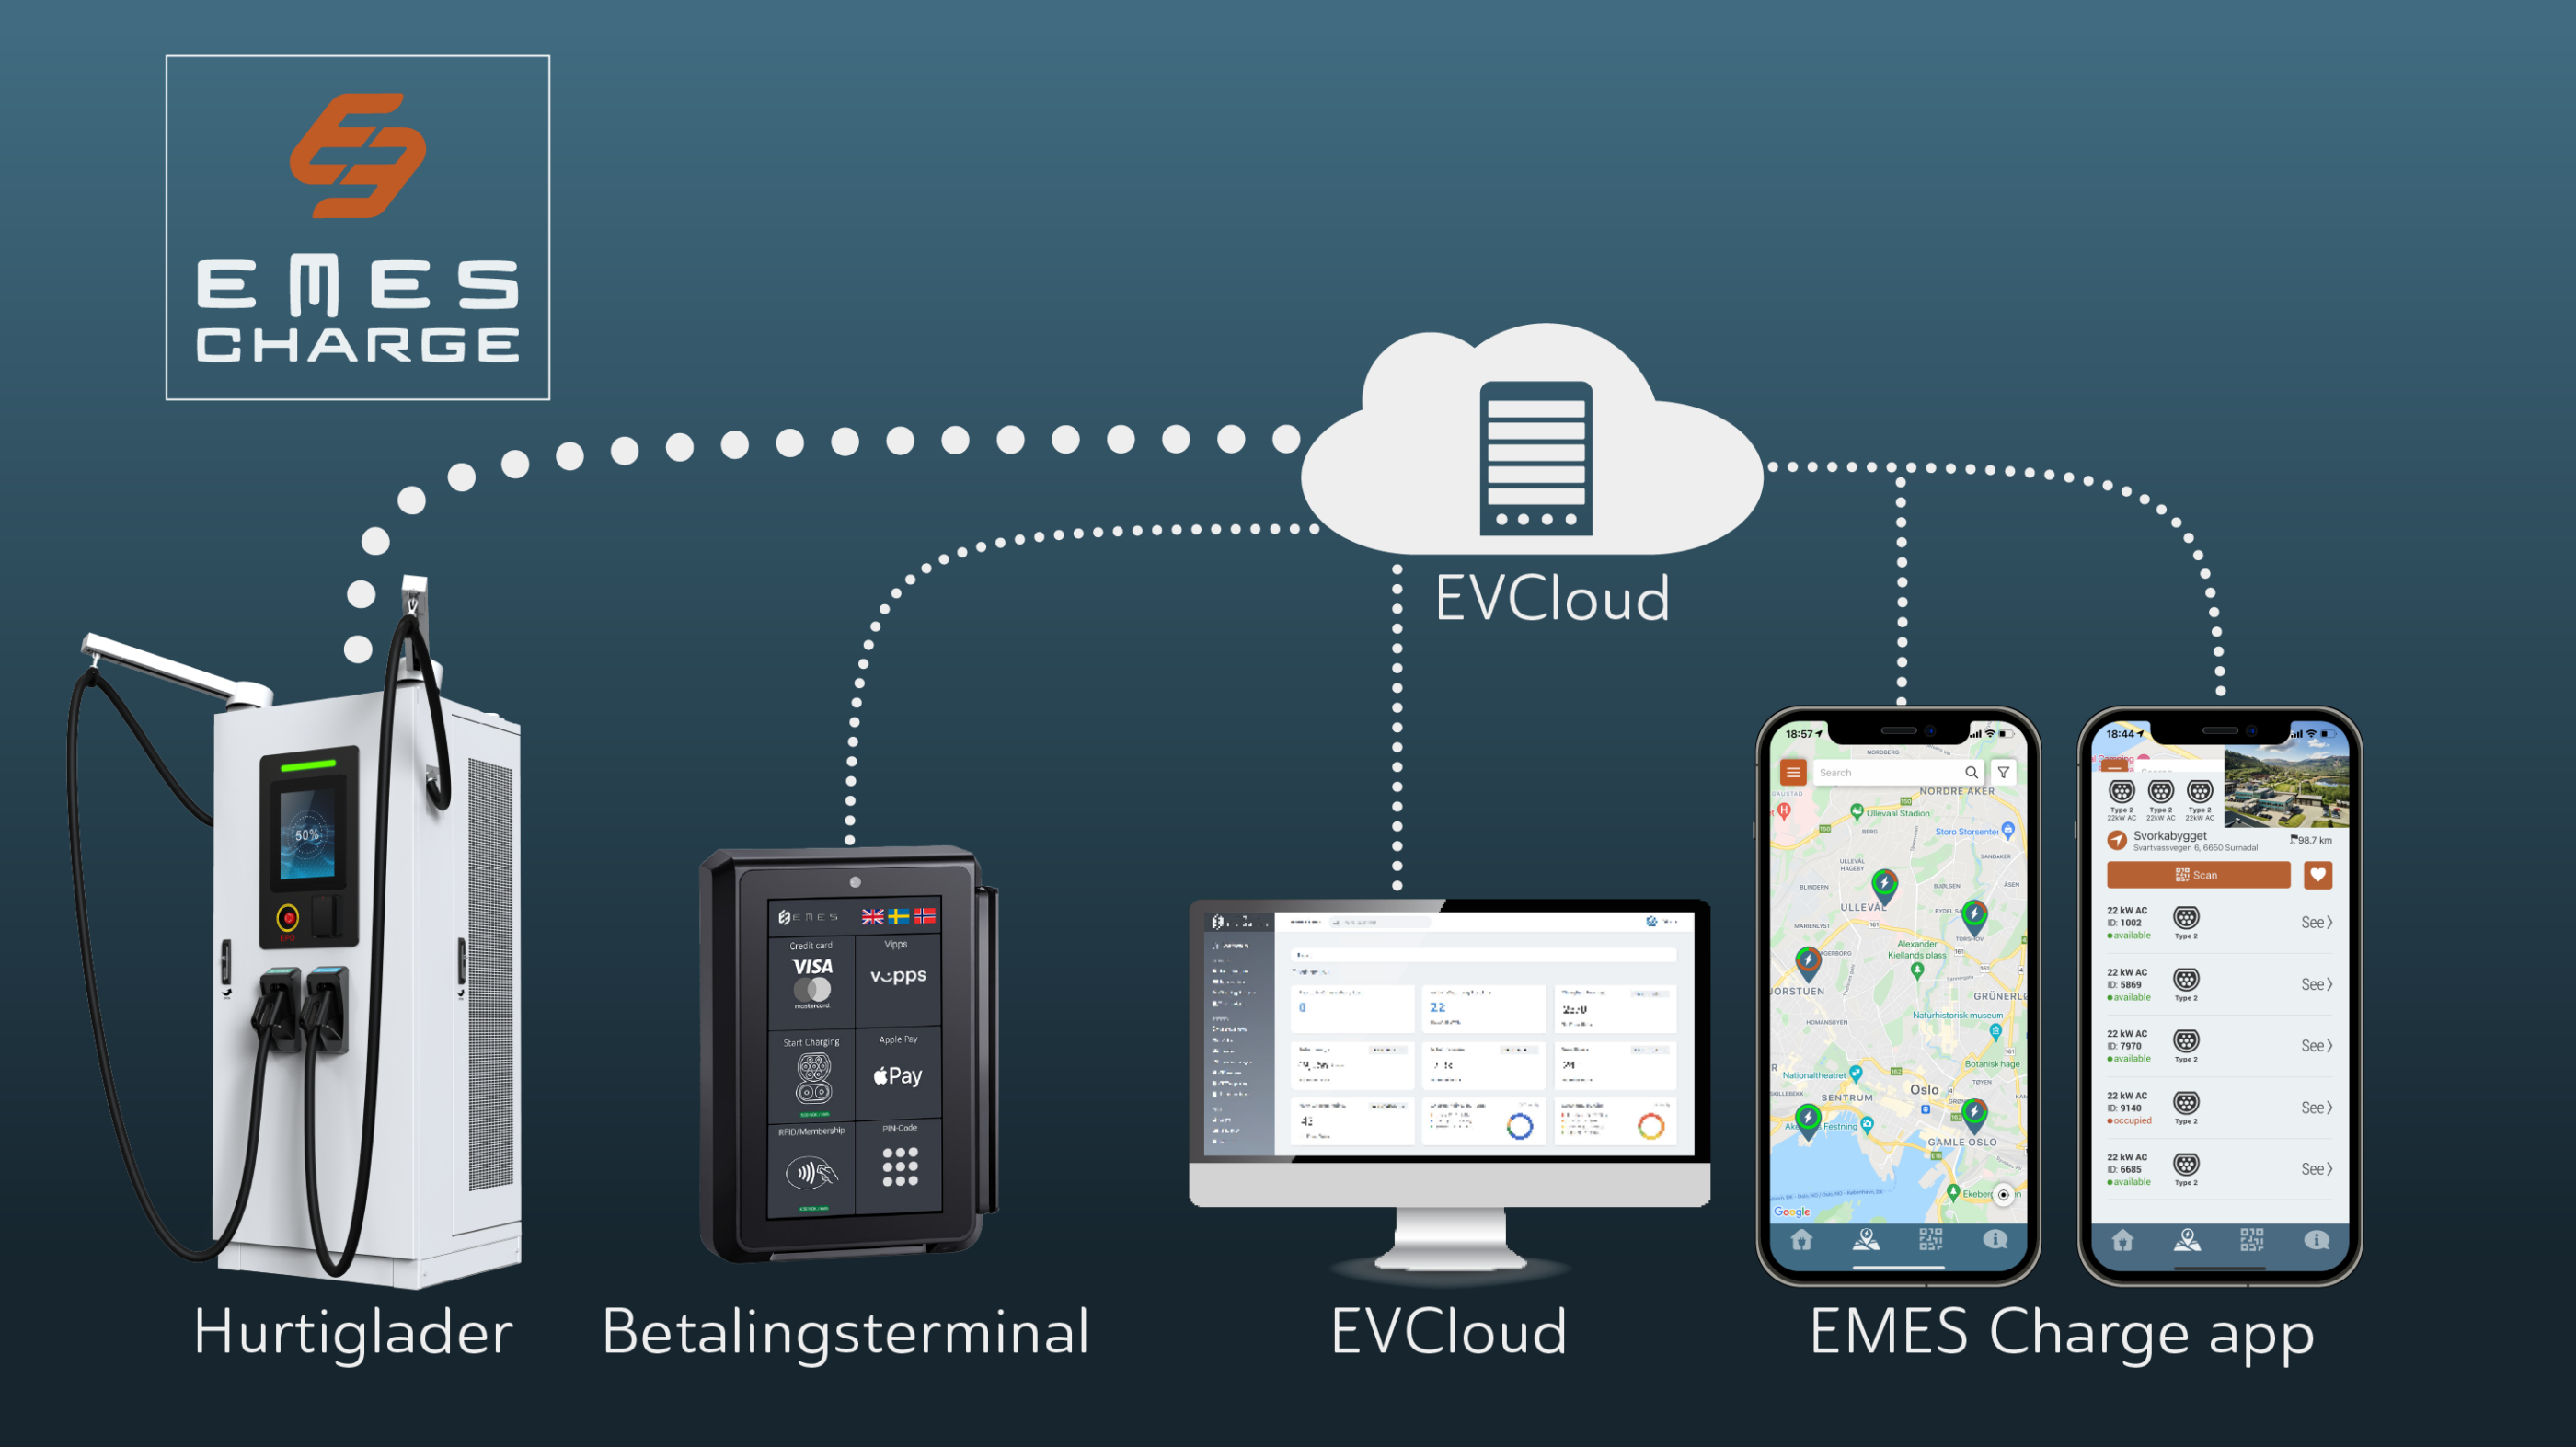 Grafisk oversikt over innholdet i EMES Charge. En hurtiglader, betalingsterminal og appen EMES Charge, er alle knyttet sammen av administrasjonssystemet "EMES EvCloud". Til sammen kaller vi det EMES Charge.